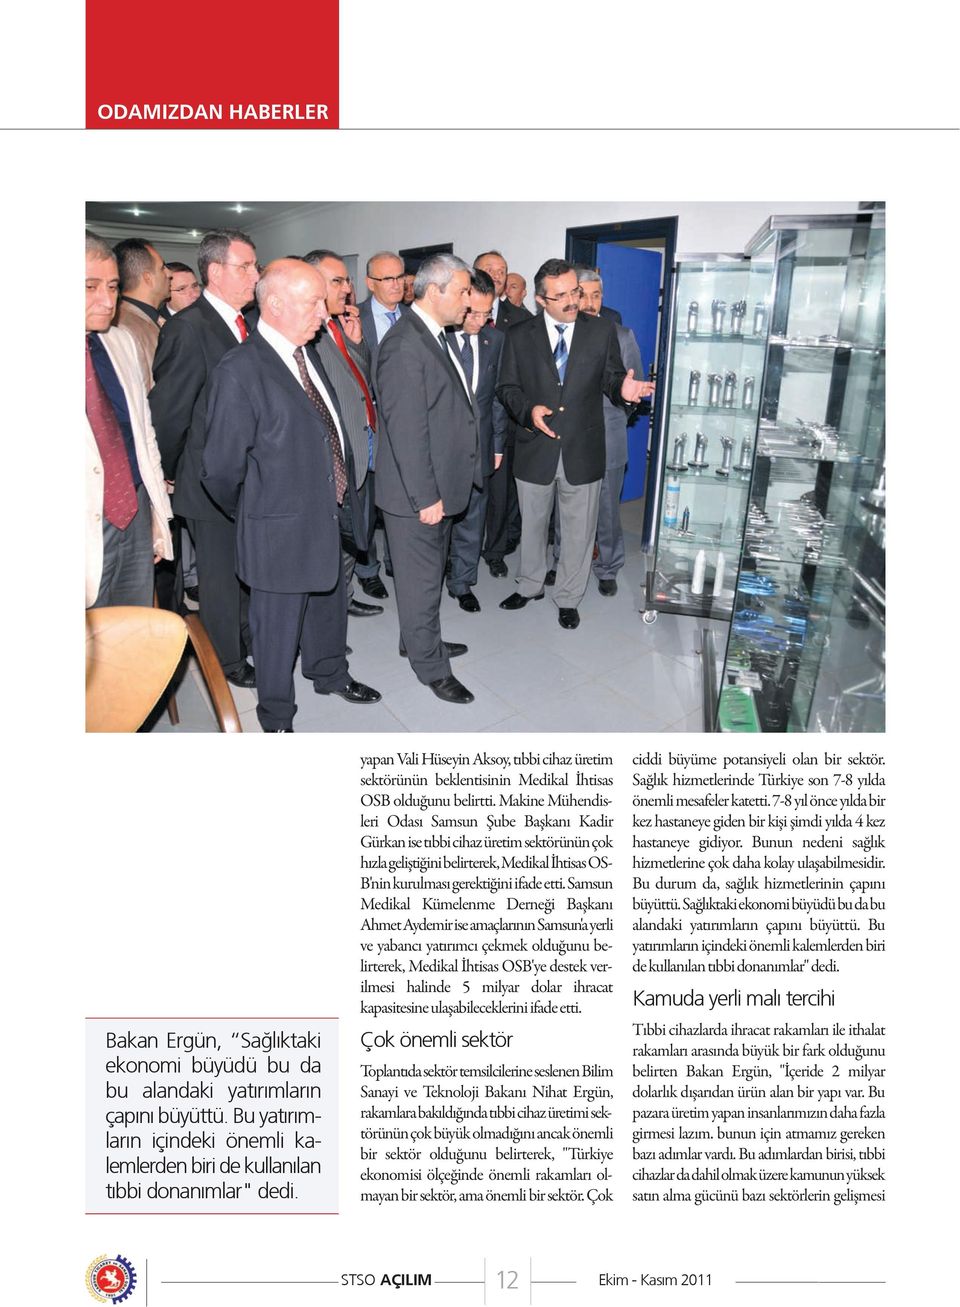 Makine Mühendisleri Odası Samsun Şube Başkanı Kadir Gürkan ise tıbbi cihaz üretim sektörünün çok hızla geliştiğini belirterek, Medikal İhtisas OS- B'nin kurulması gerektiğini ifade etti.